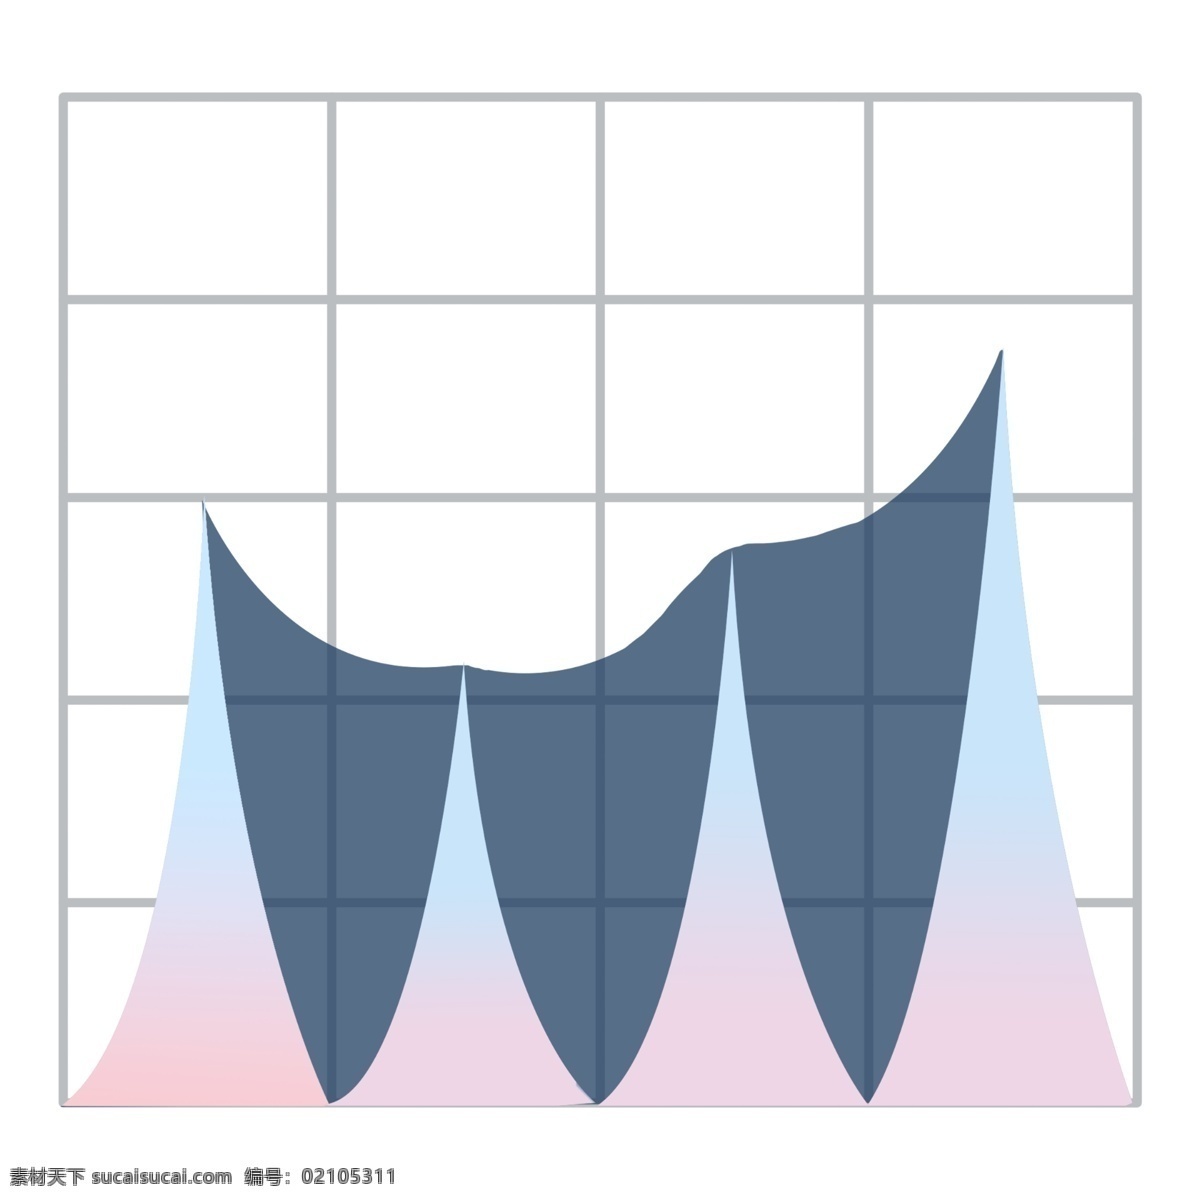 卡通 粉色 统计 插画 分析图插画 卡通分析插画 蓝色的分析图 分析统计图 分析插画 蓝色的统计图